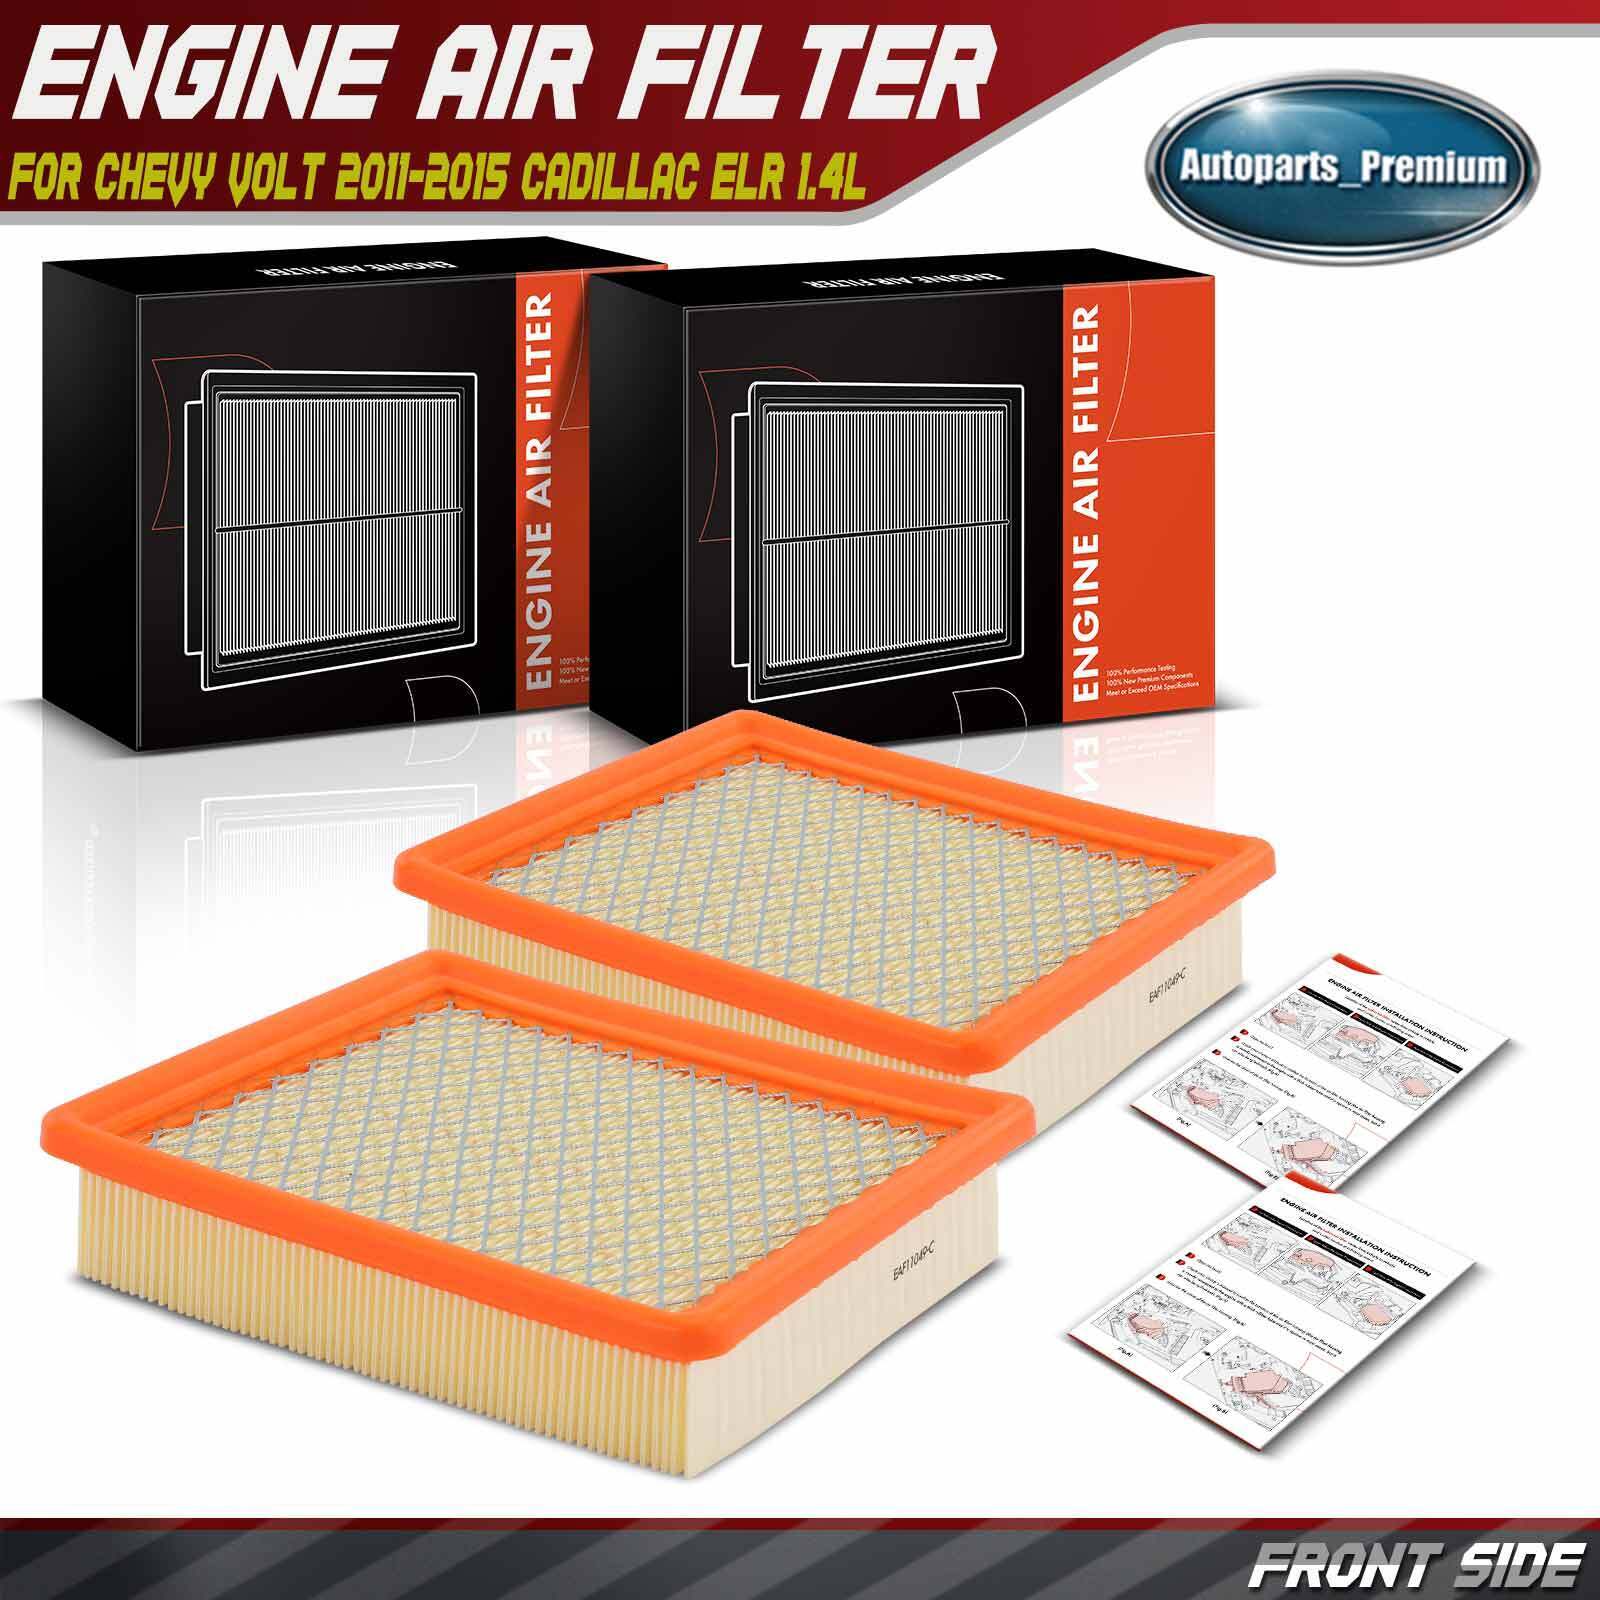 2x Engine Air Filter for Chevrolet Volt 2011-2015 Cadillac ELR 2014-2016 L4 1.4L